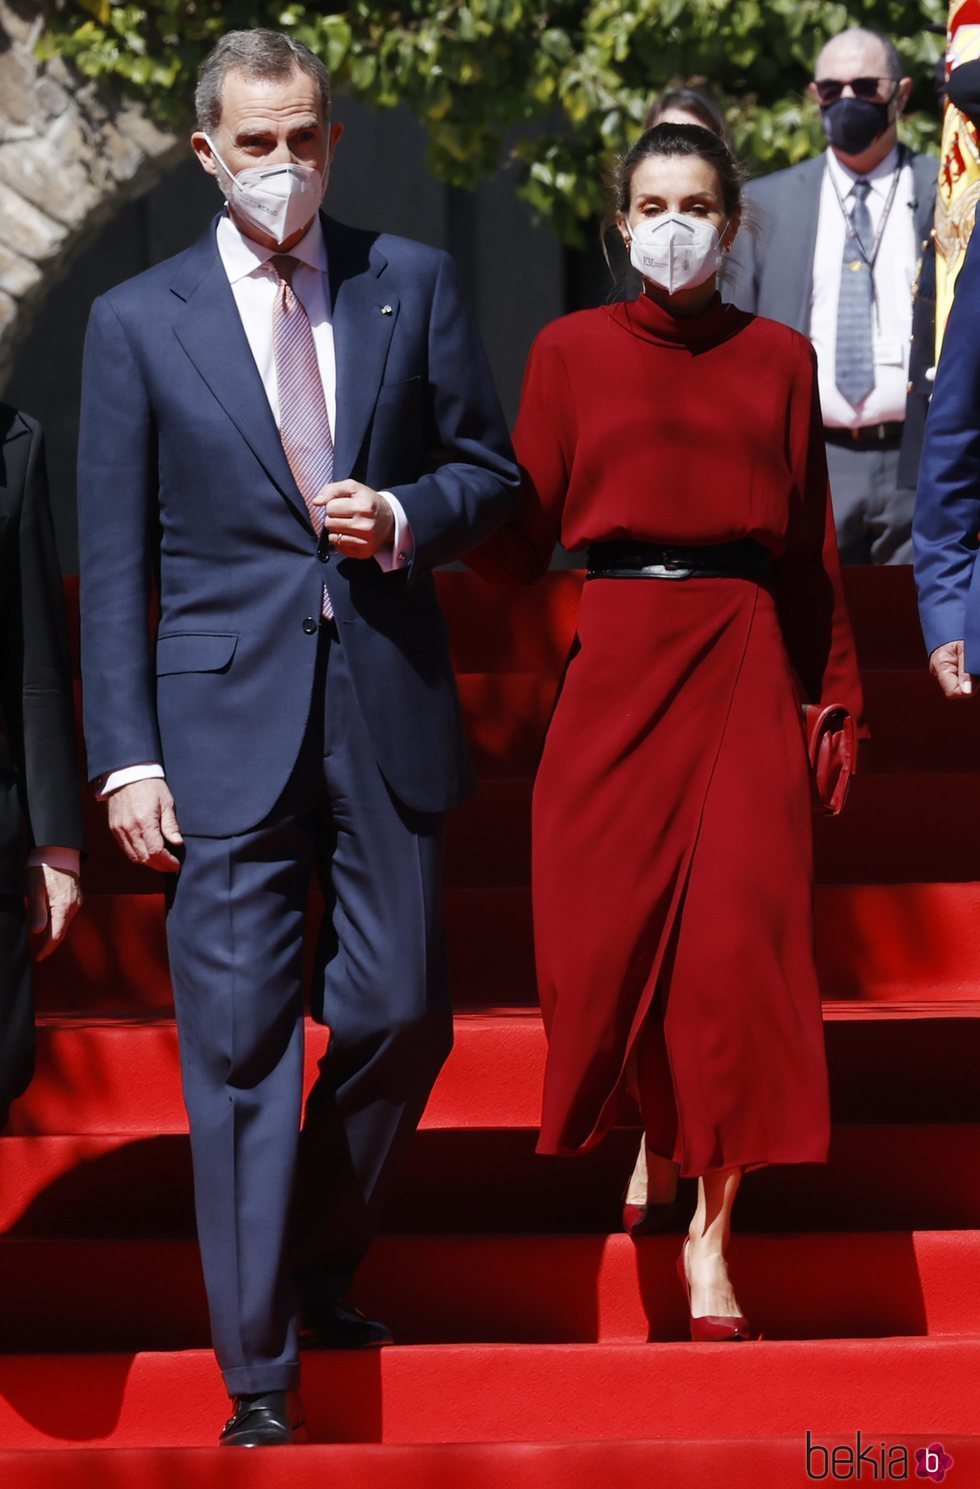 Los Reyes Felipe y Letizia al comienzo de su Viaje de Estado a Andorra